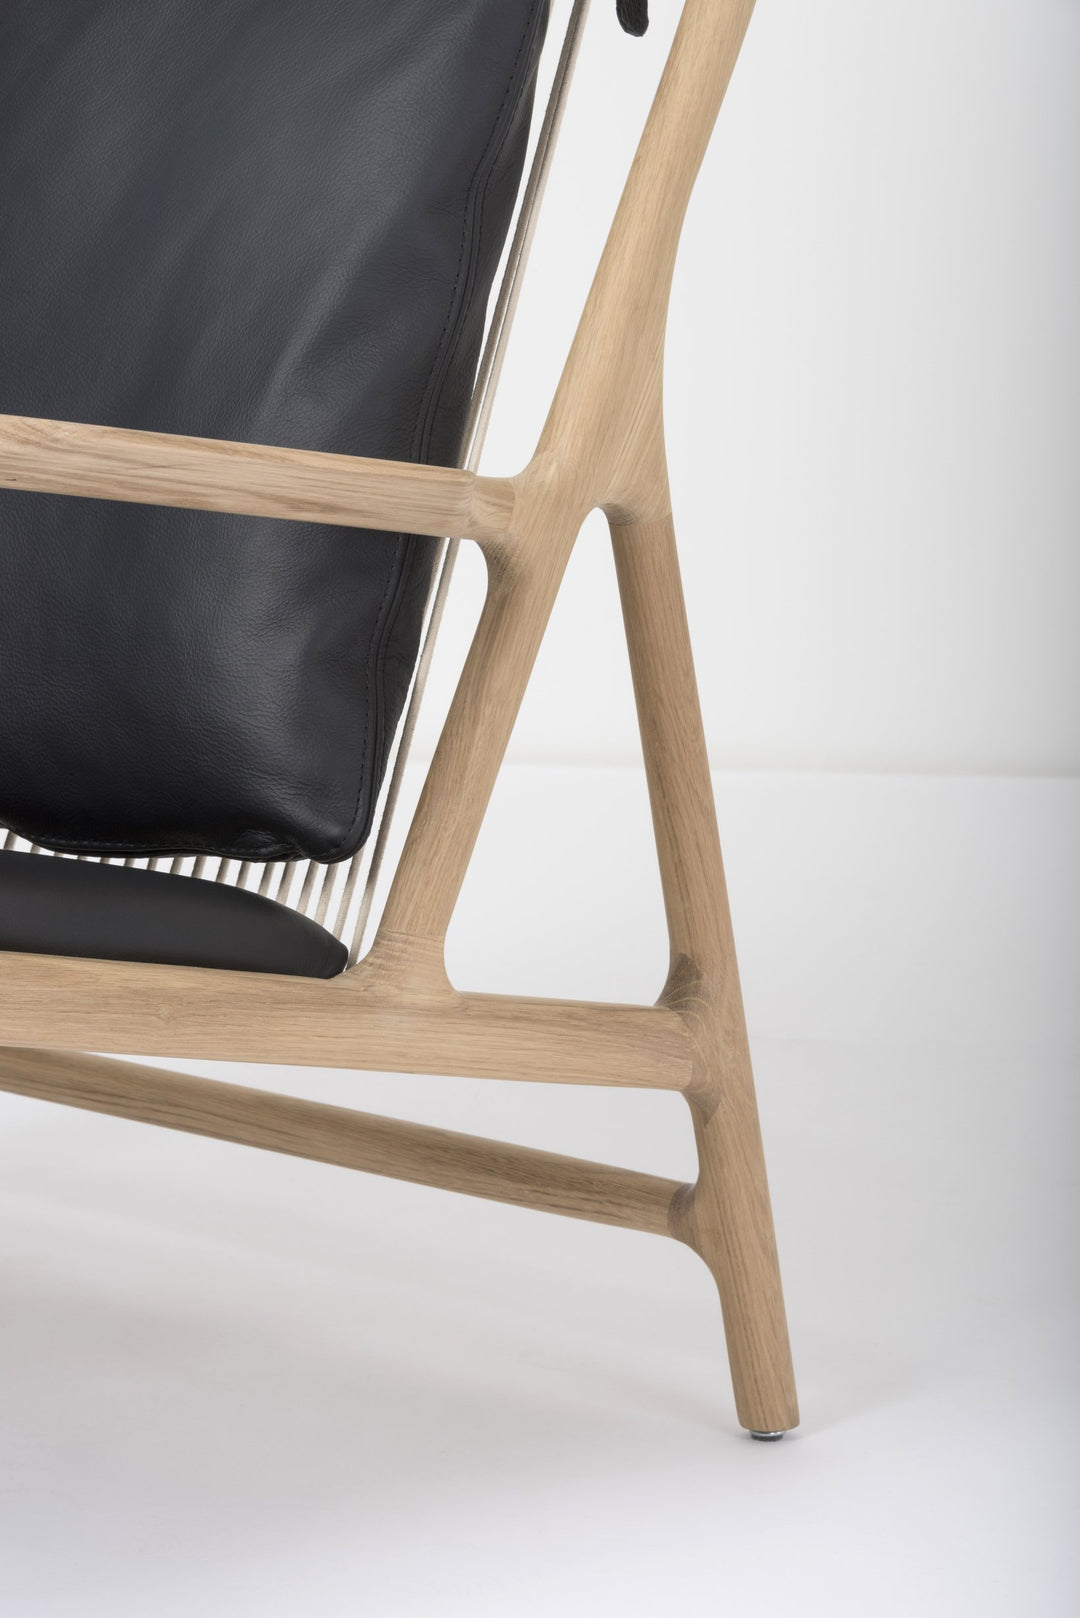 Gazzda Stuhl Eiche weiß 1015 / Black 0500 Dedo Lounge Chair mit Lederbezug